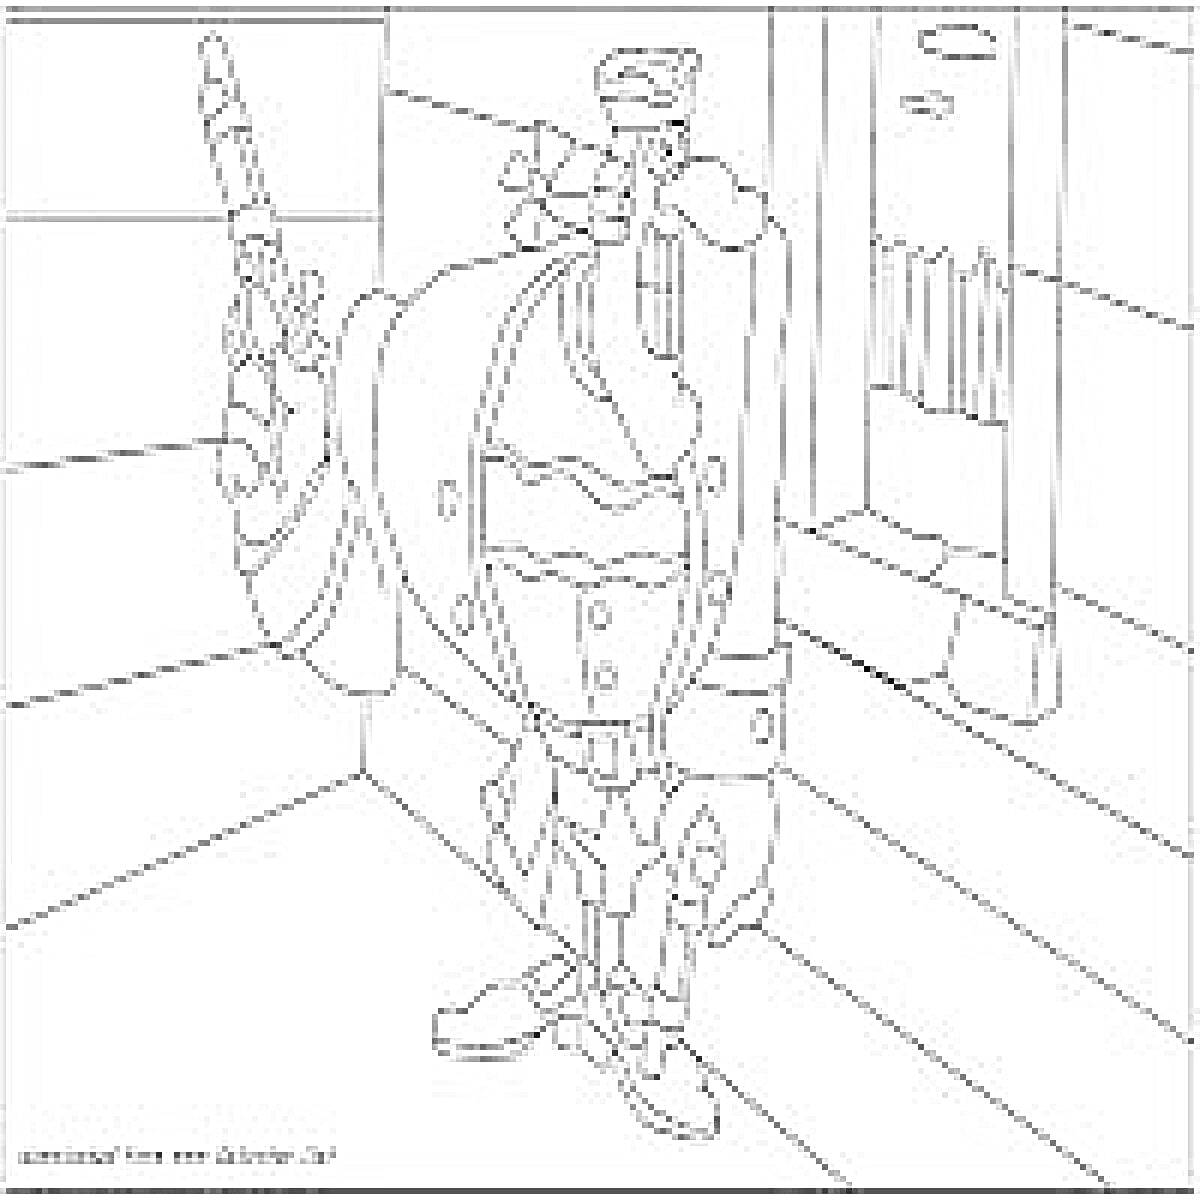 Доктор Ливси с пистолетом в руке на фоне коридора со стенами, окном с решёткой и открытой дверью